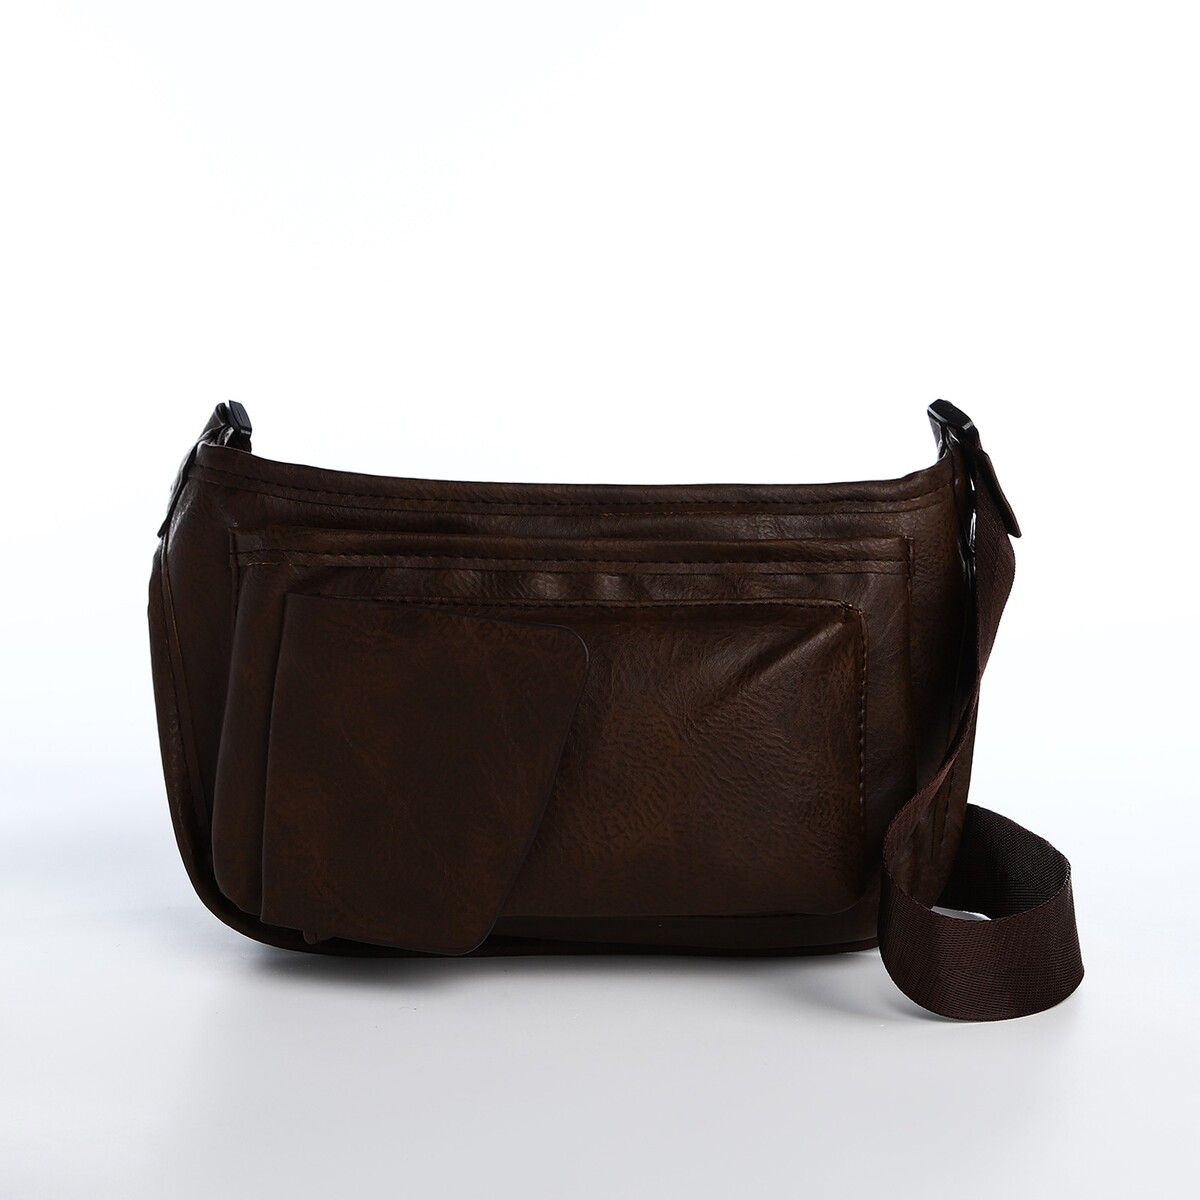 Поясная сумка на молнии, 3 наружных кармана, цвет коричневый поясная сумка на молнии 3 наружных кармана зацеп на ногу